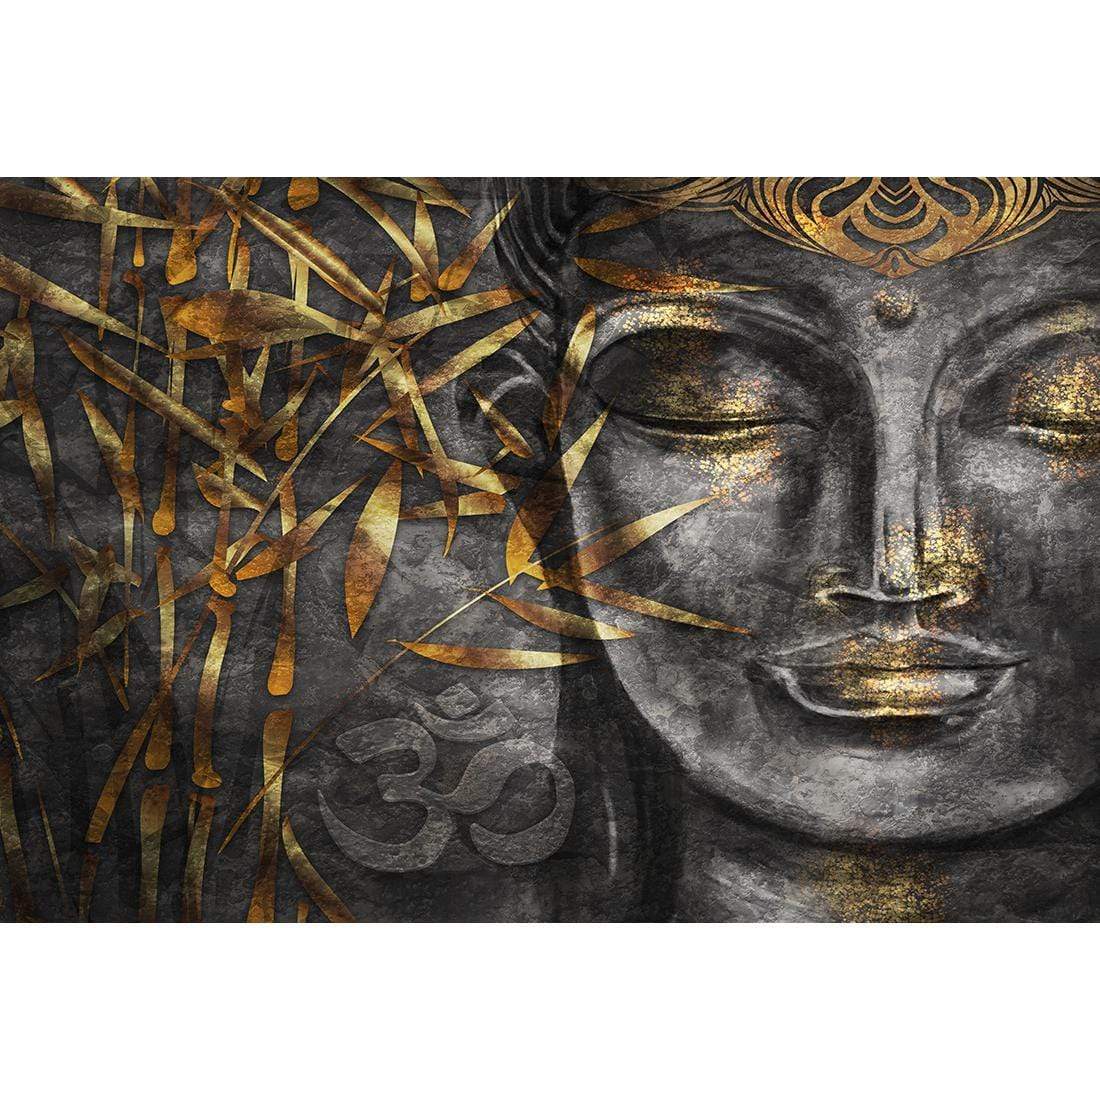 Gold Leafed Buddha 2 - wallart-australia - Canvas